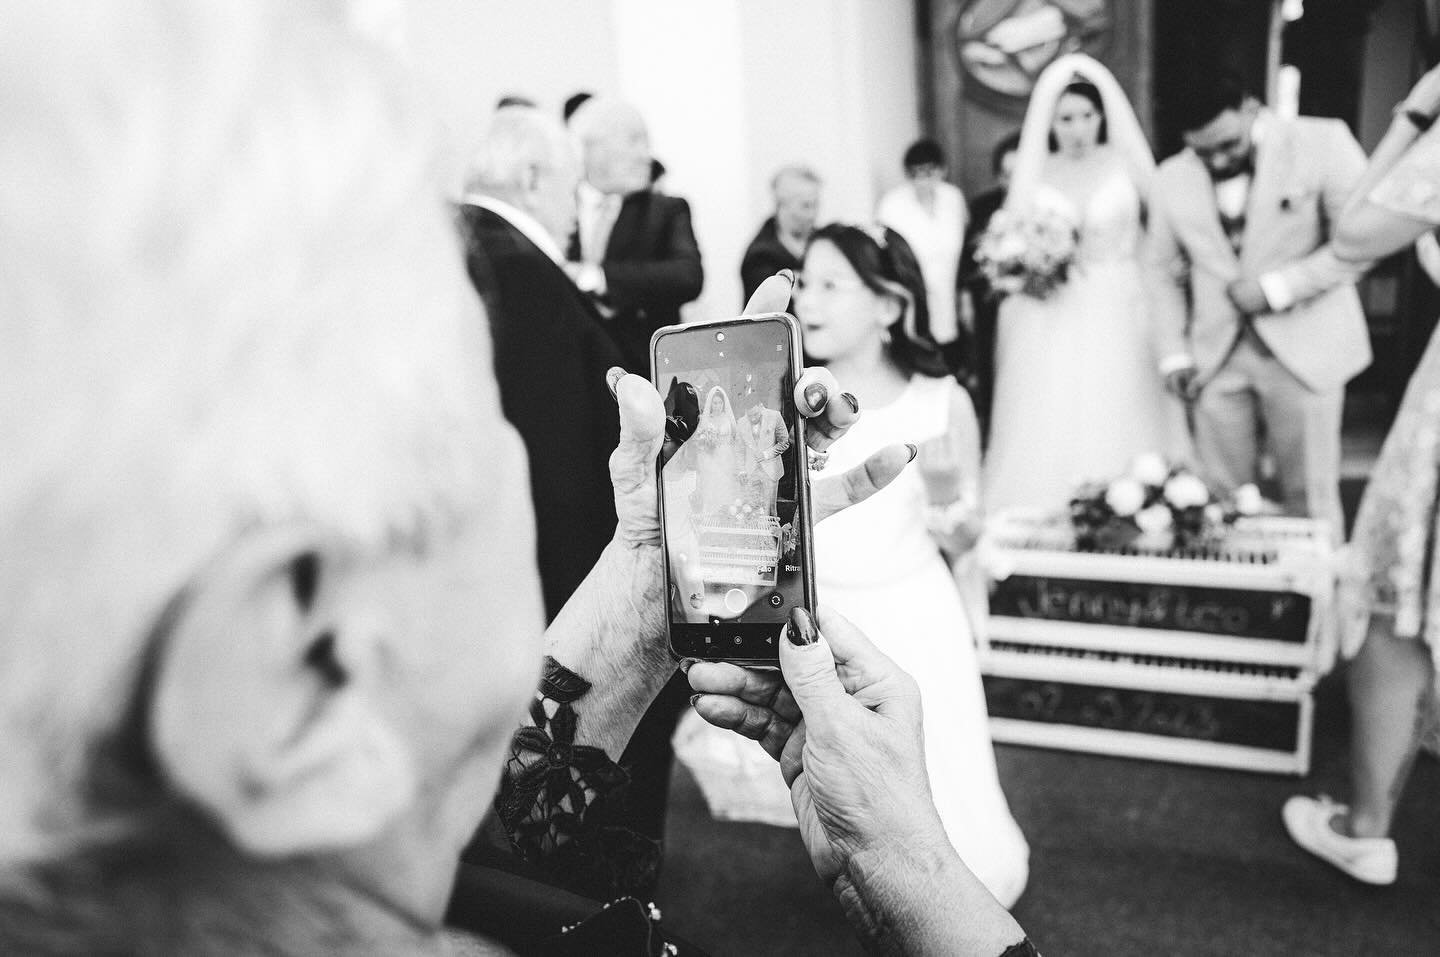 Die untypische Hochzytsfotos si die woni am liebschte ha. 🥰 #hochzyt #hochzeit #wedding #hochzeitsbilder #hochzeitsfotos